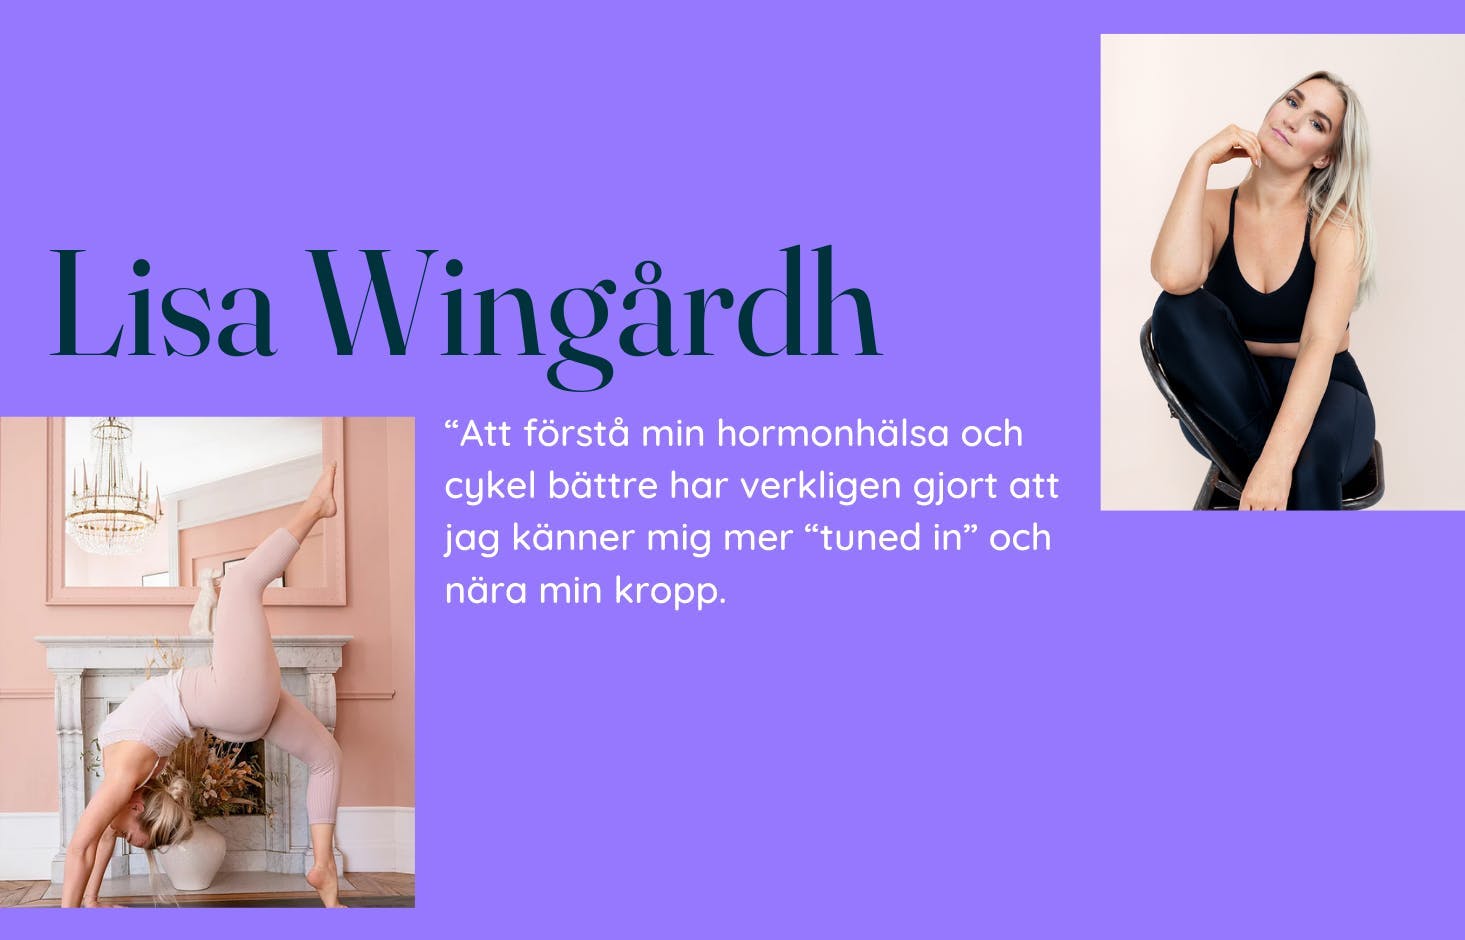 Bilder på Lisa Wingårdh och citat mot lila bakgrund.